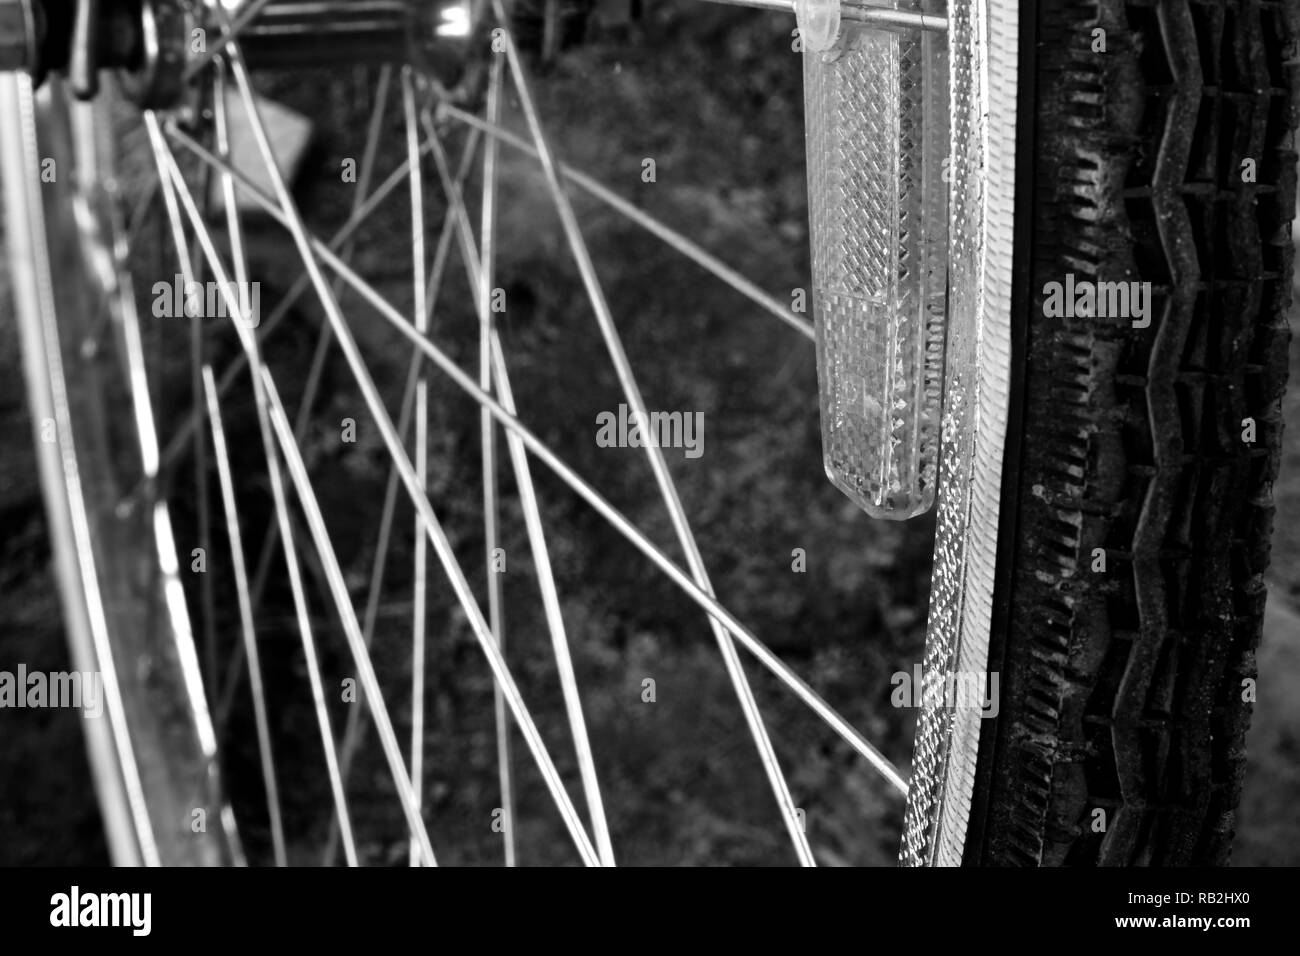 Roue d'une bicyclette en effet l'échelle de gris Banque D'Images